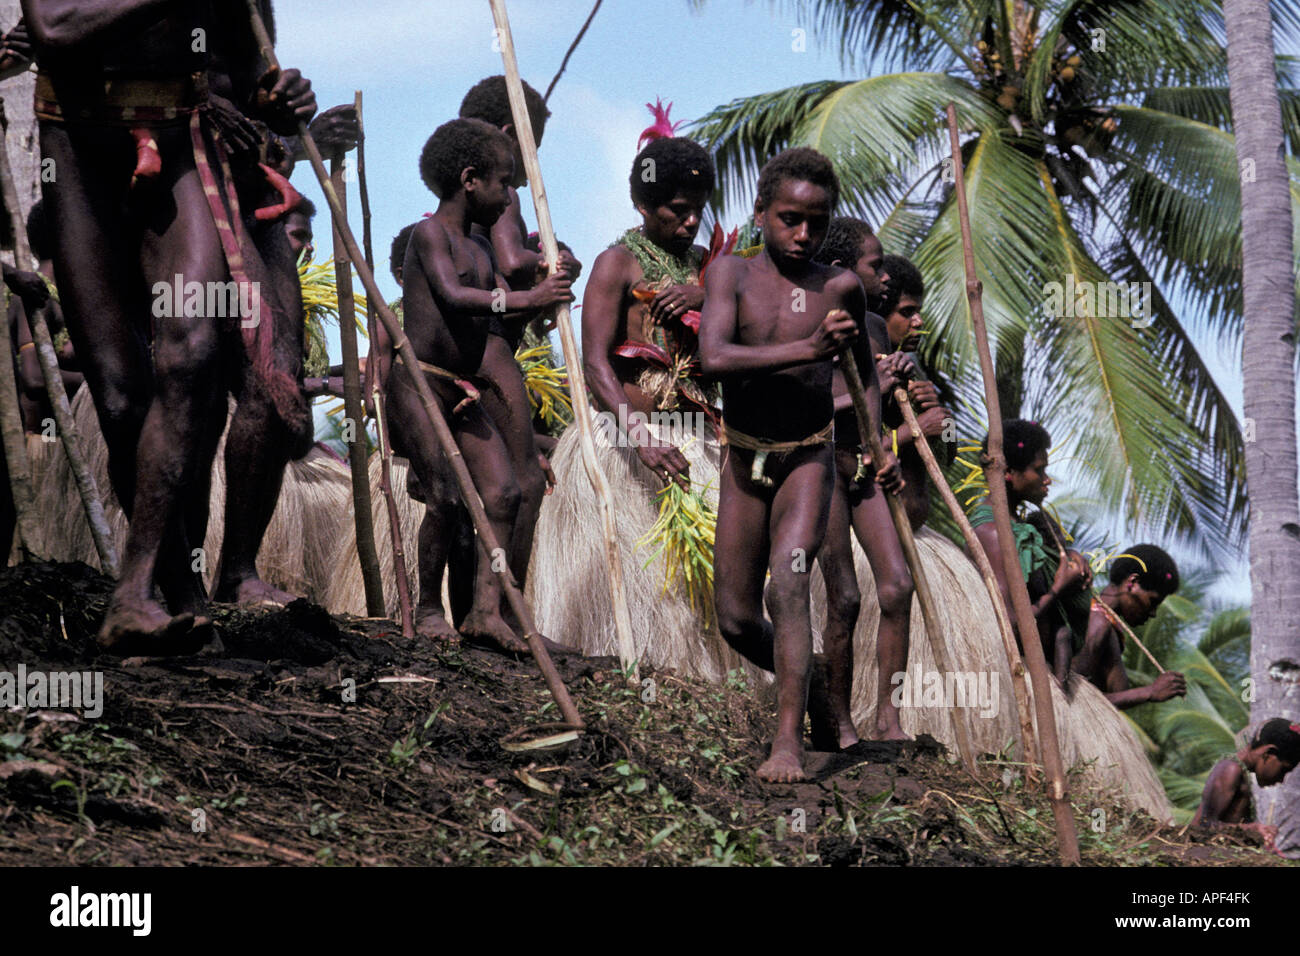 Oceano Pacifico, Vanuatu, Isola di Pentecoste, nativo i bambini a guardare la tradizionale Terra di Pentecoste immersioni subacquee o N'gol Foto Stock